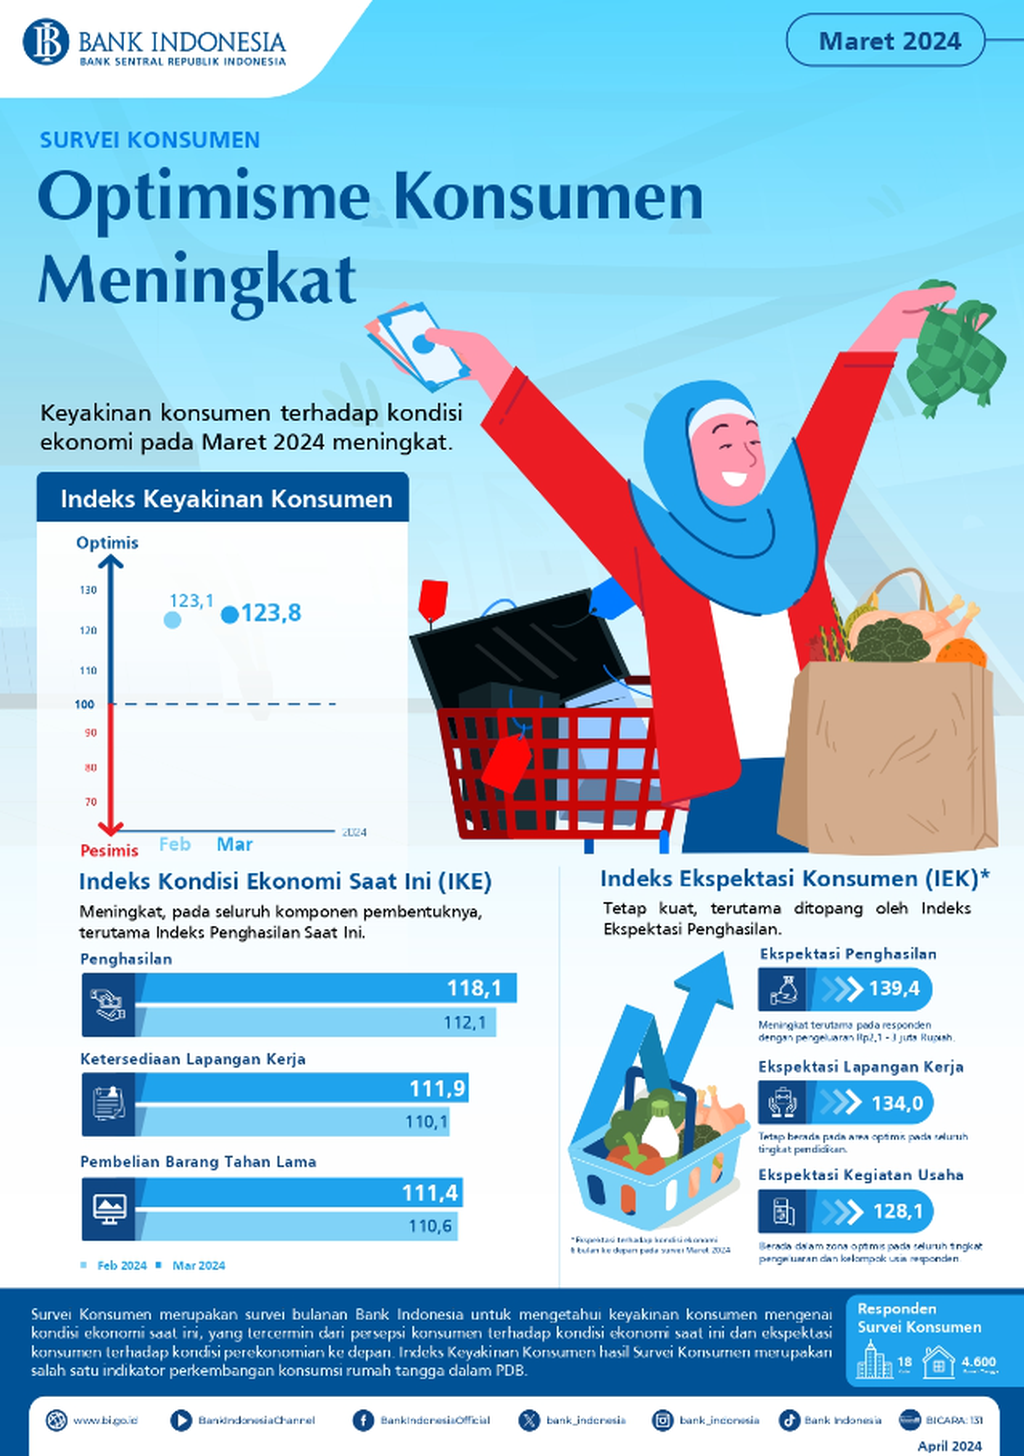 Hasil Survei Konsumen Bank Indonesia pada Maret 2024. Survei tersebut mengingikasikan peningkatan keyakinan konsumen pada Maret 2024 sebesar 123,8 basis poin. Sumber: Bank Indonesia